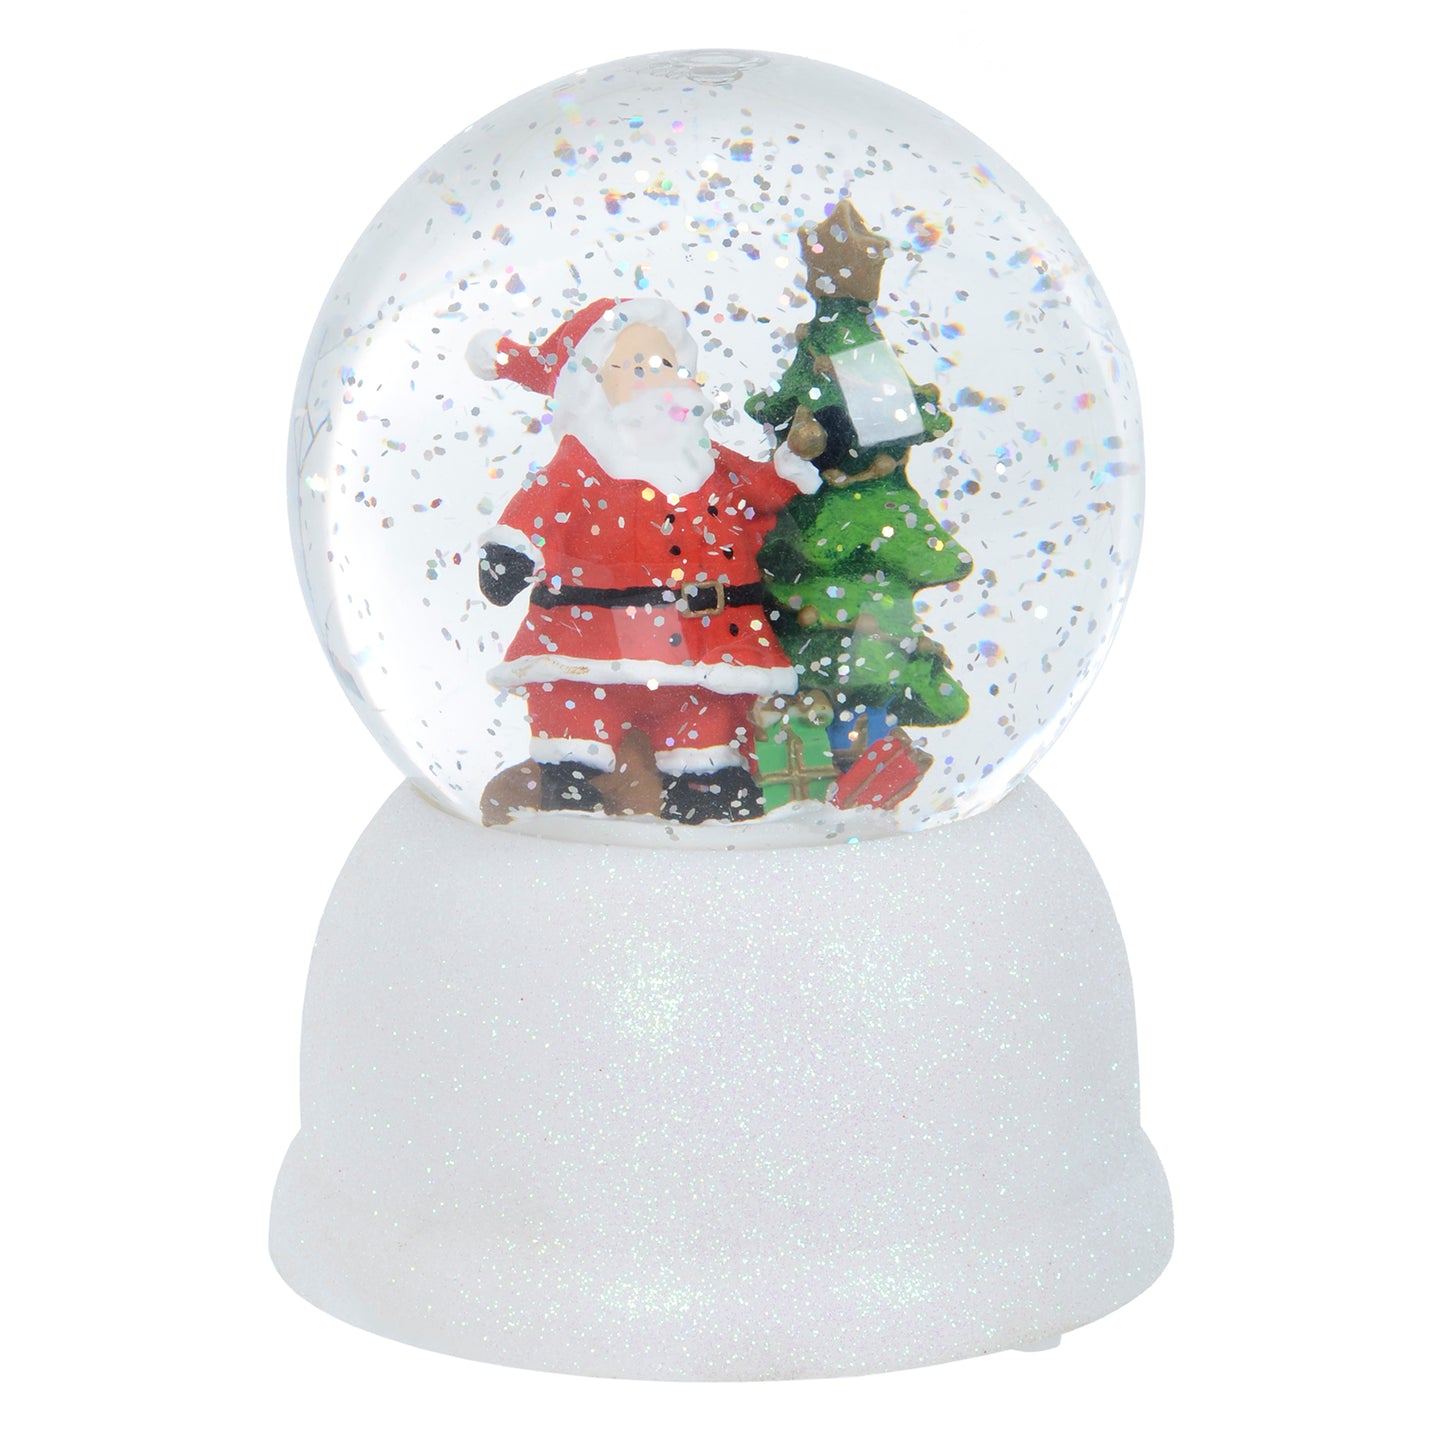 Mr Crimbo Santa Globe Glitter Water Spinner Ornament - MrCrimbo.co.uk -XS6369 - -christmas decor